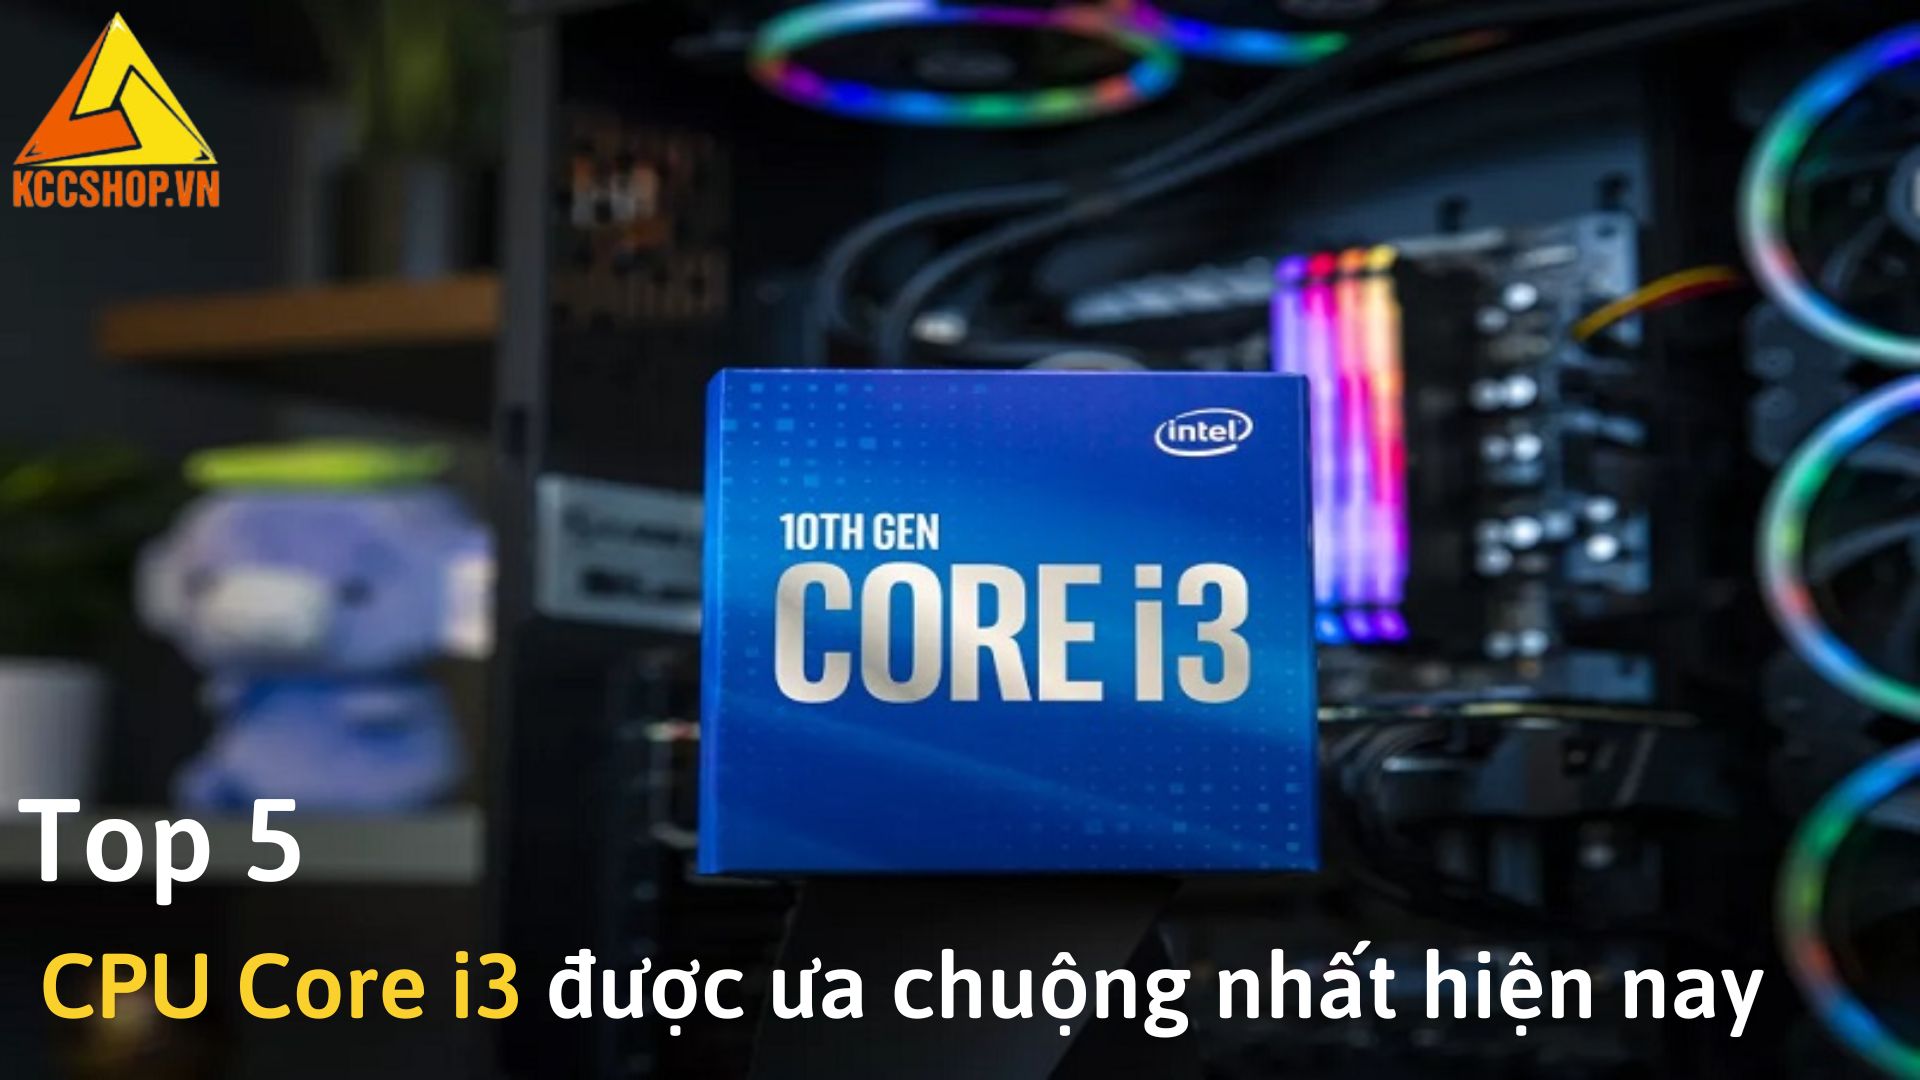 Top 5 CPU Core i3 được ưa chuộng nhất hiện nay